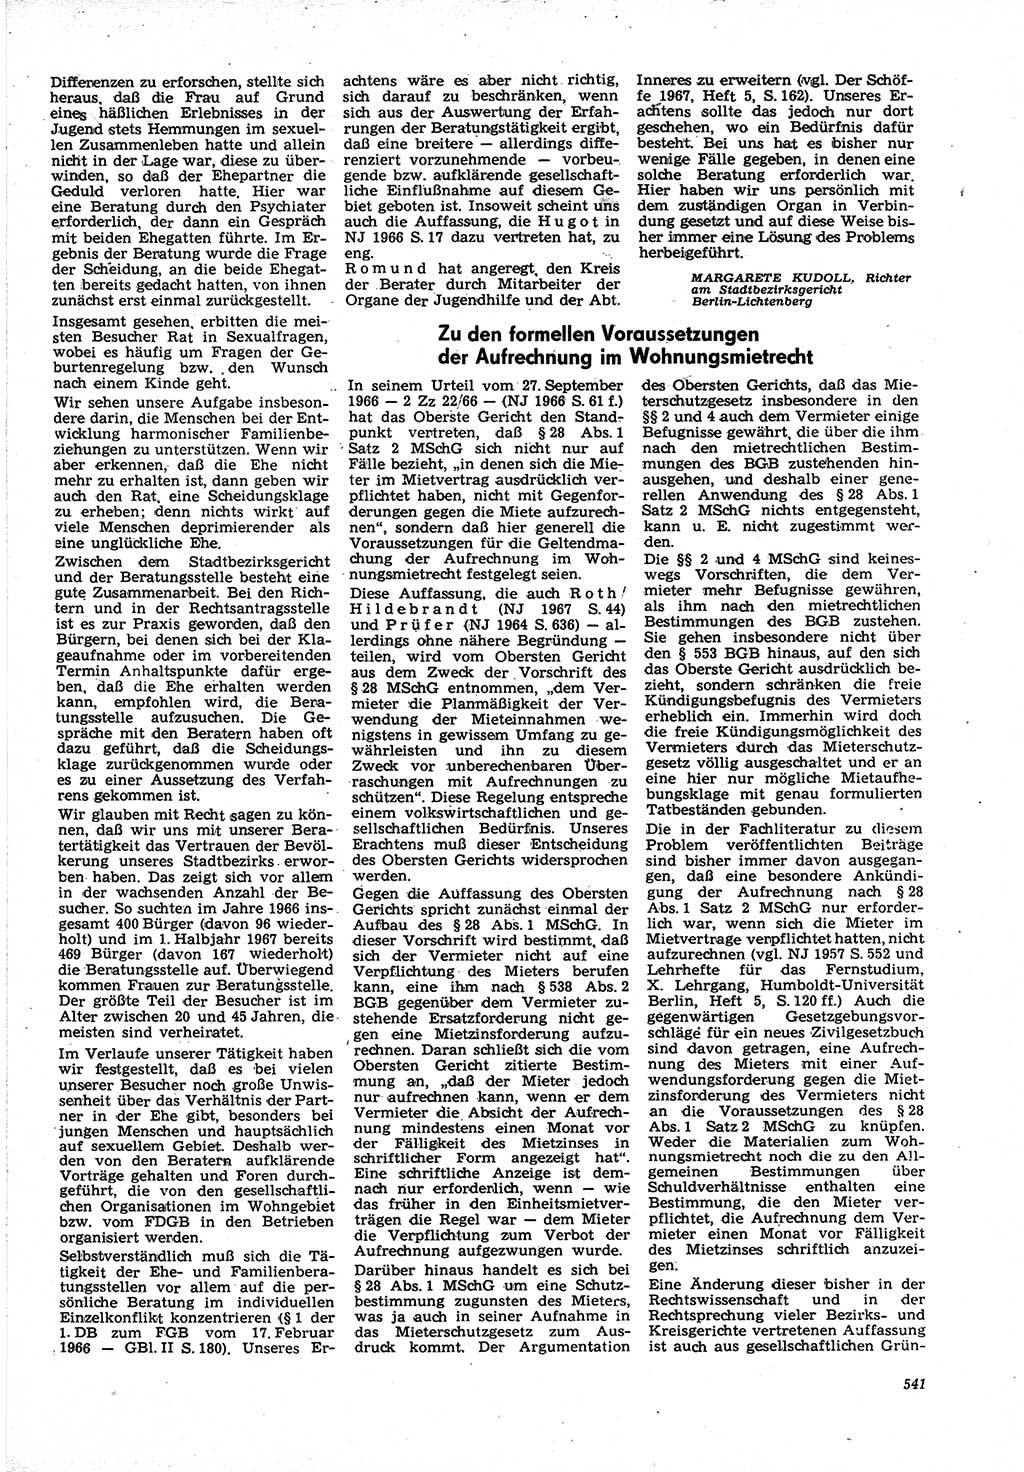 Neue Justiz (NJ), Zeitschrift für Recht und Rechtswissenschaft [Deutsche Demokratische Republik (DDR)], 21. Jahrgang 1967, Seite 541 (NJ DDR 1967, S. 541)